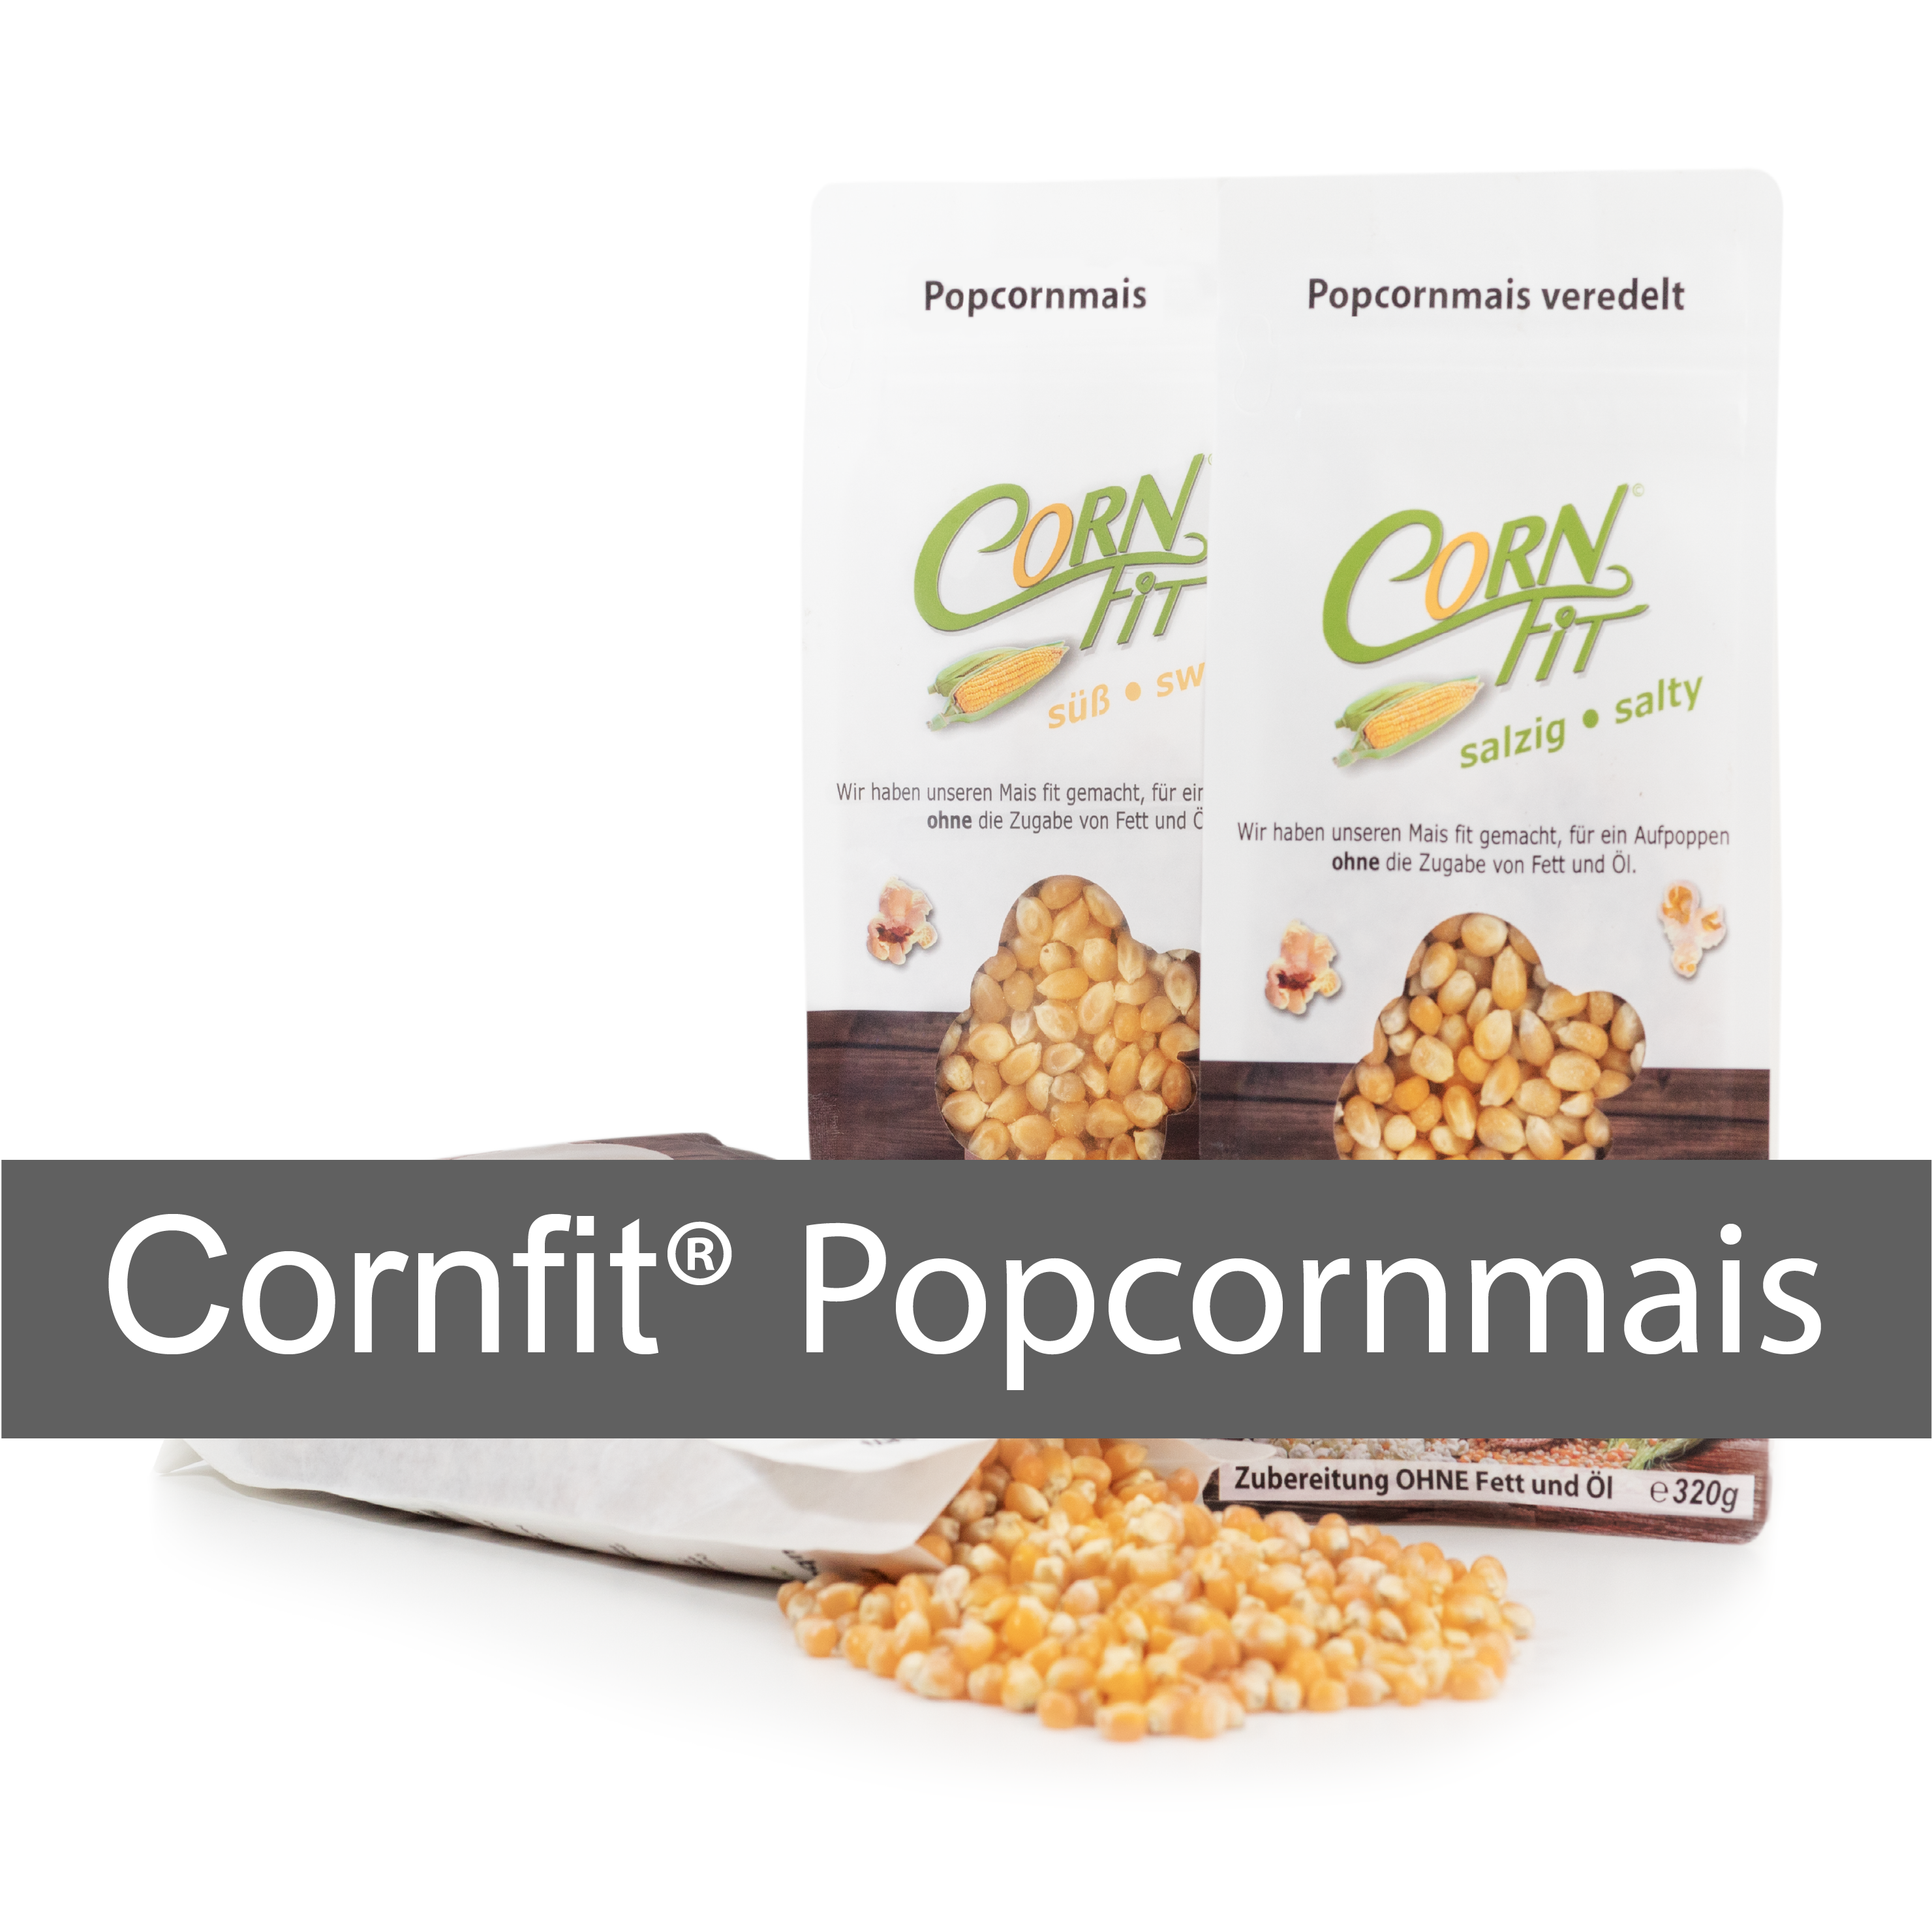 cornfit, popcornmais